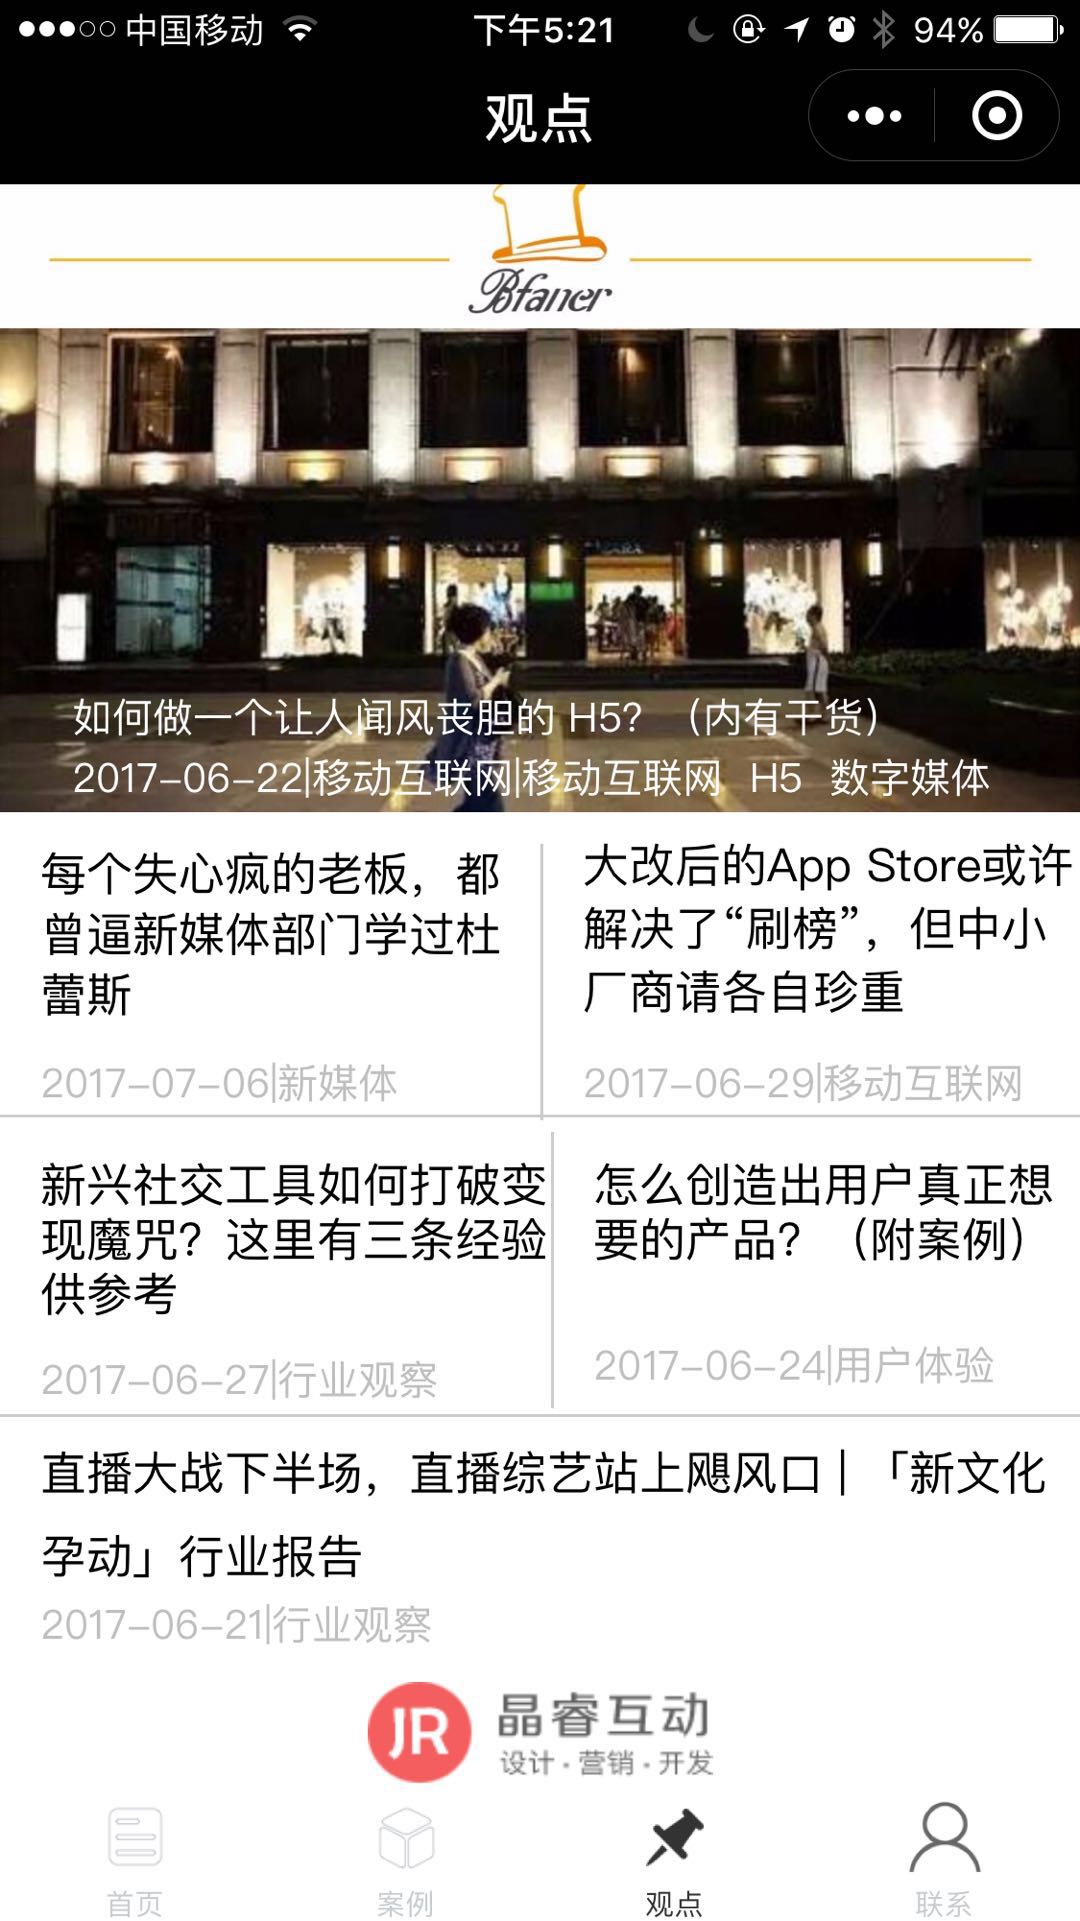 上海小APP程序开发_上海小APP程序开发小程序_上海小APP程序开发微信小程序